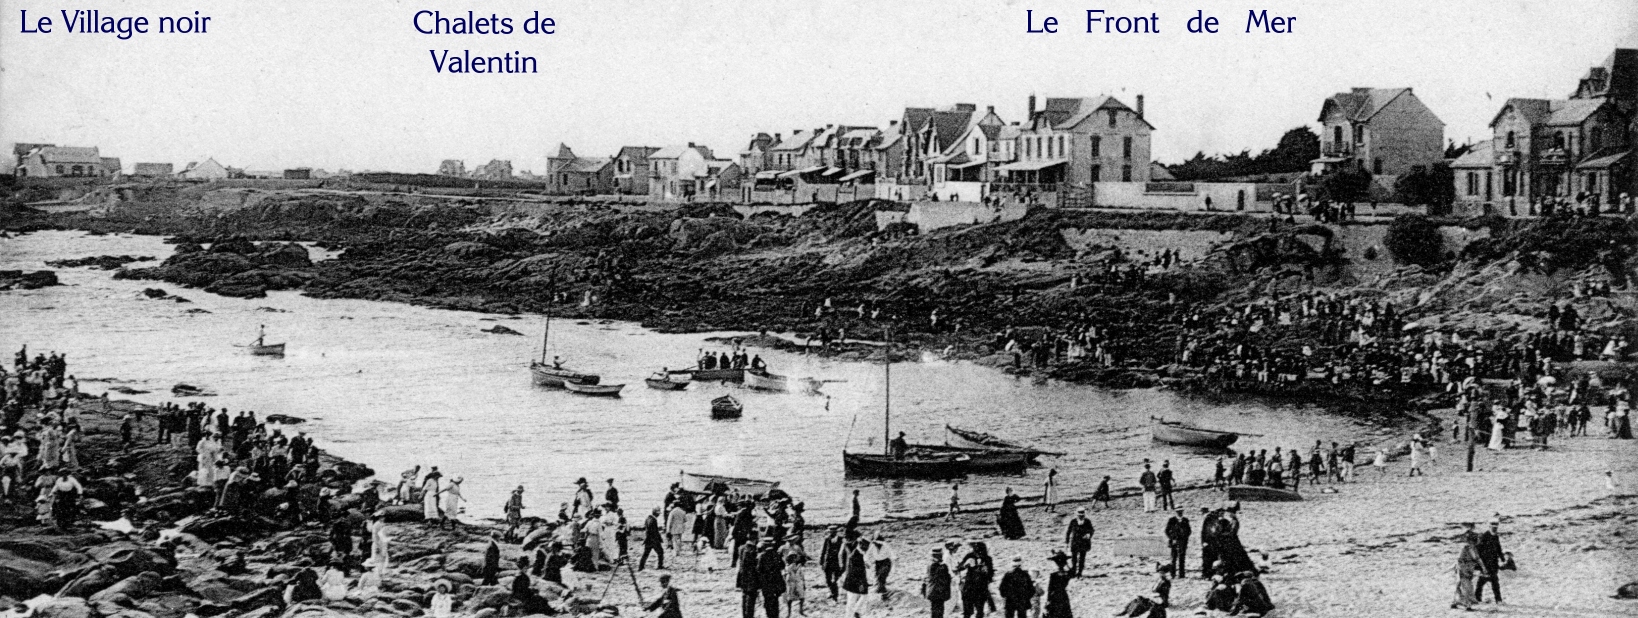 Les chalets anciens du Front de mer, du Village noir et 
de la plage Valentin de Bourg-de-Batz